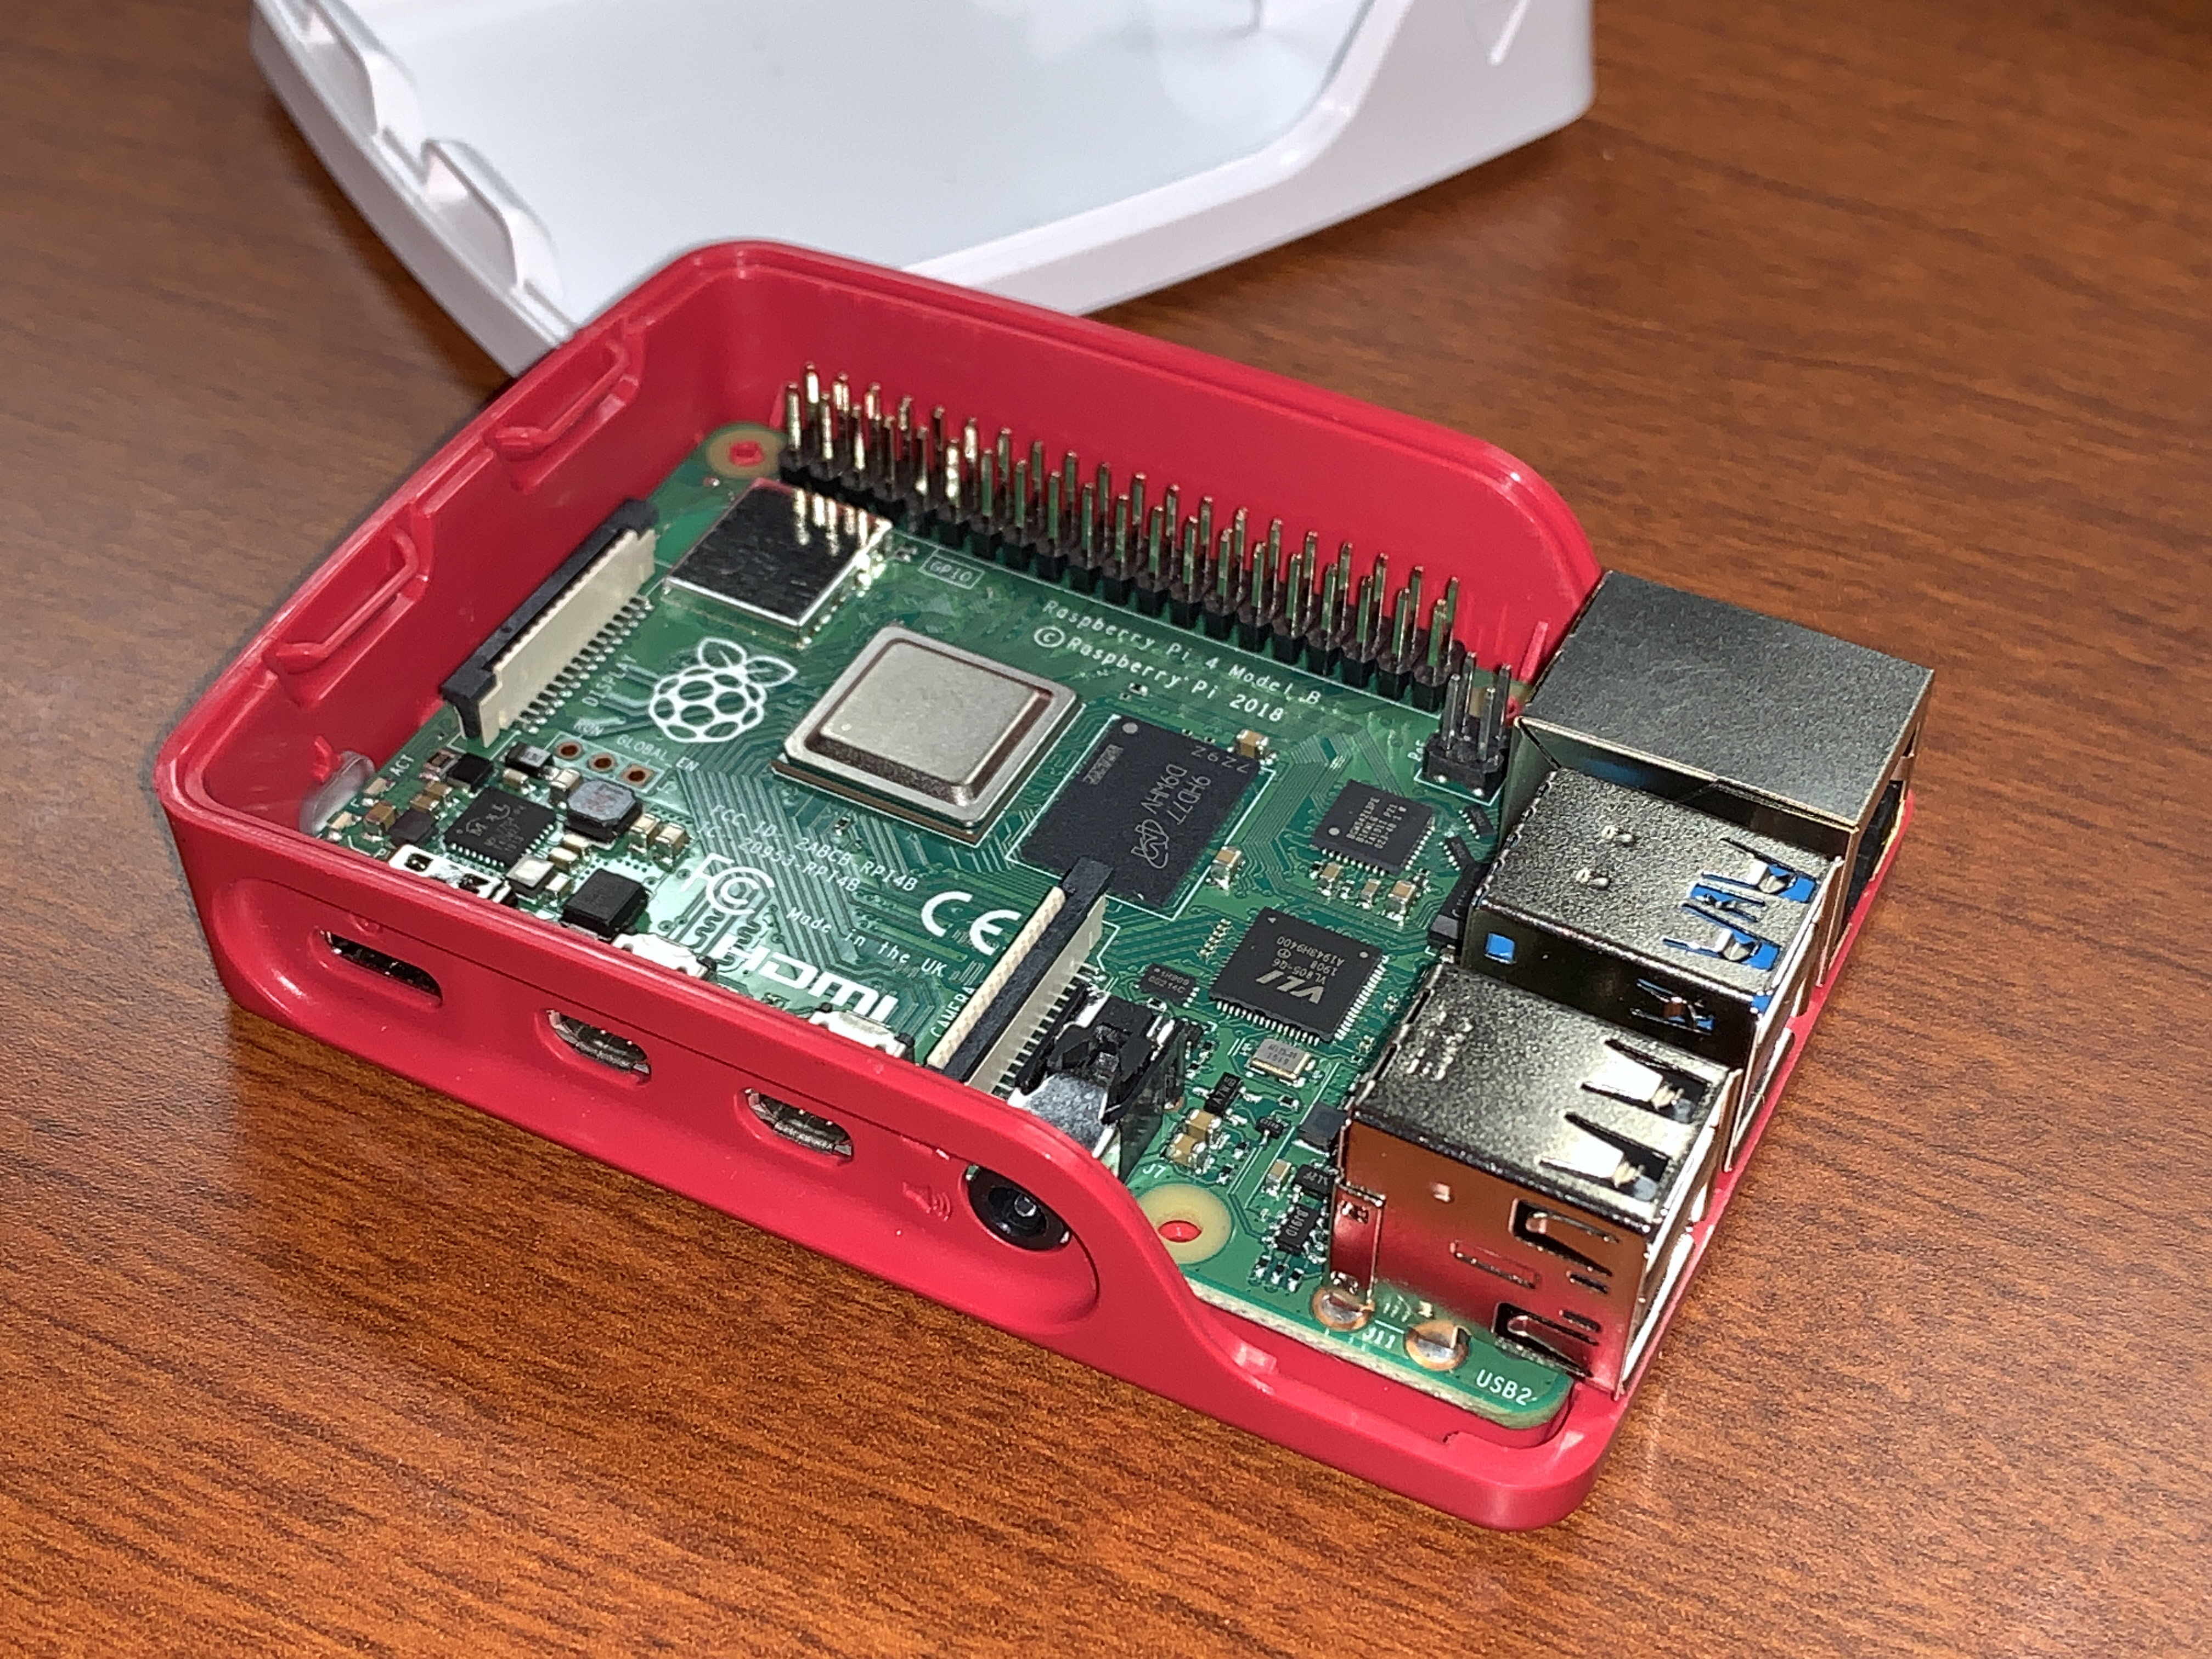 Raspberry Pi 4 Model B Official Case